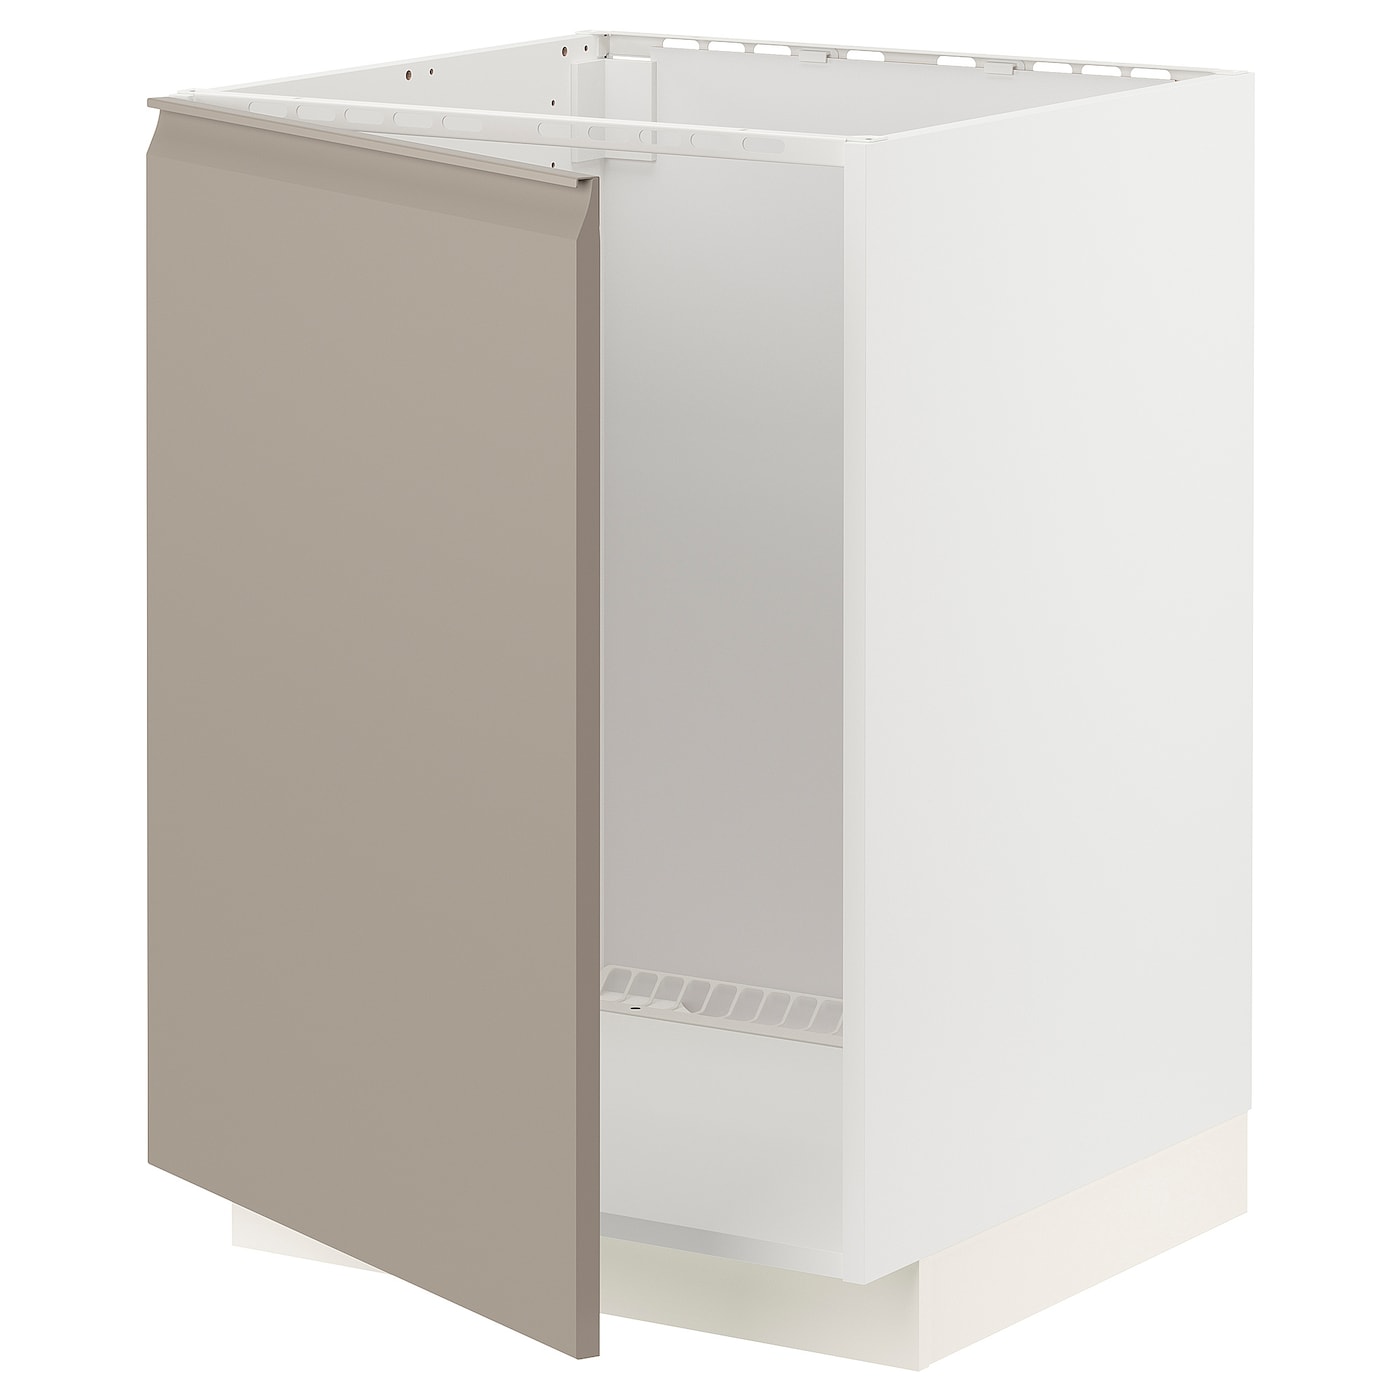 Напольный шкаф - IKEA METOD, 88x62x60см, белый/темно-бежевый, МЕТОД ИКЕА